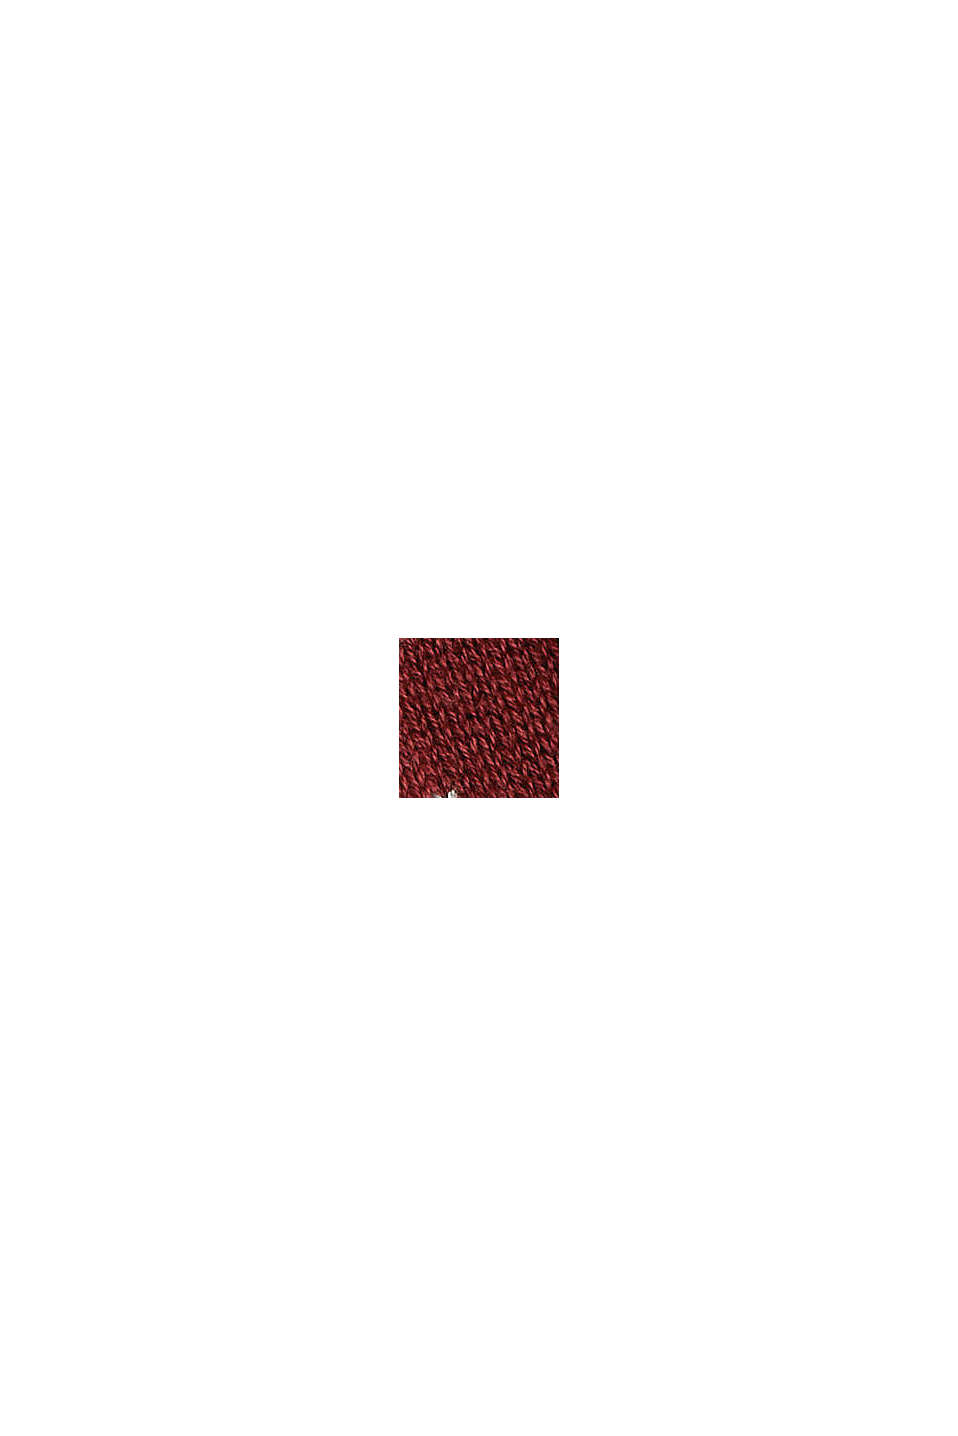 Norweger-Pullover aus 100% Baumwolle, GARNET RED, swatch